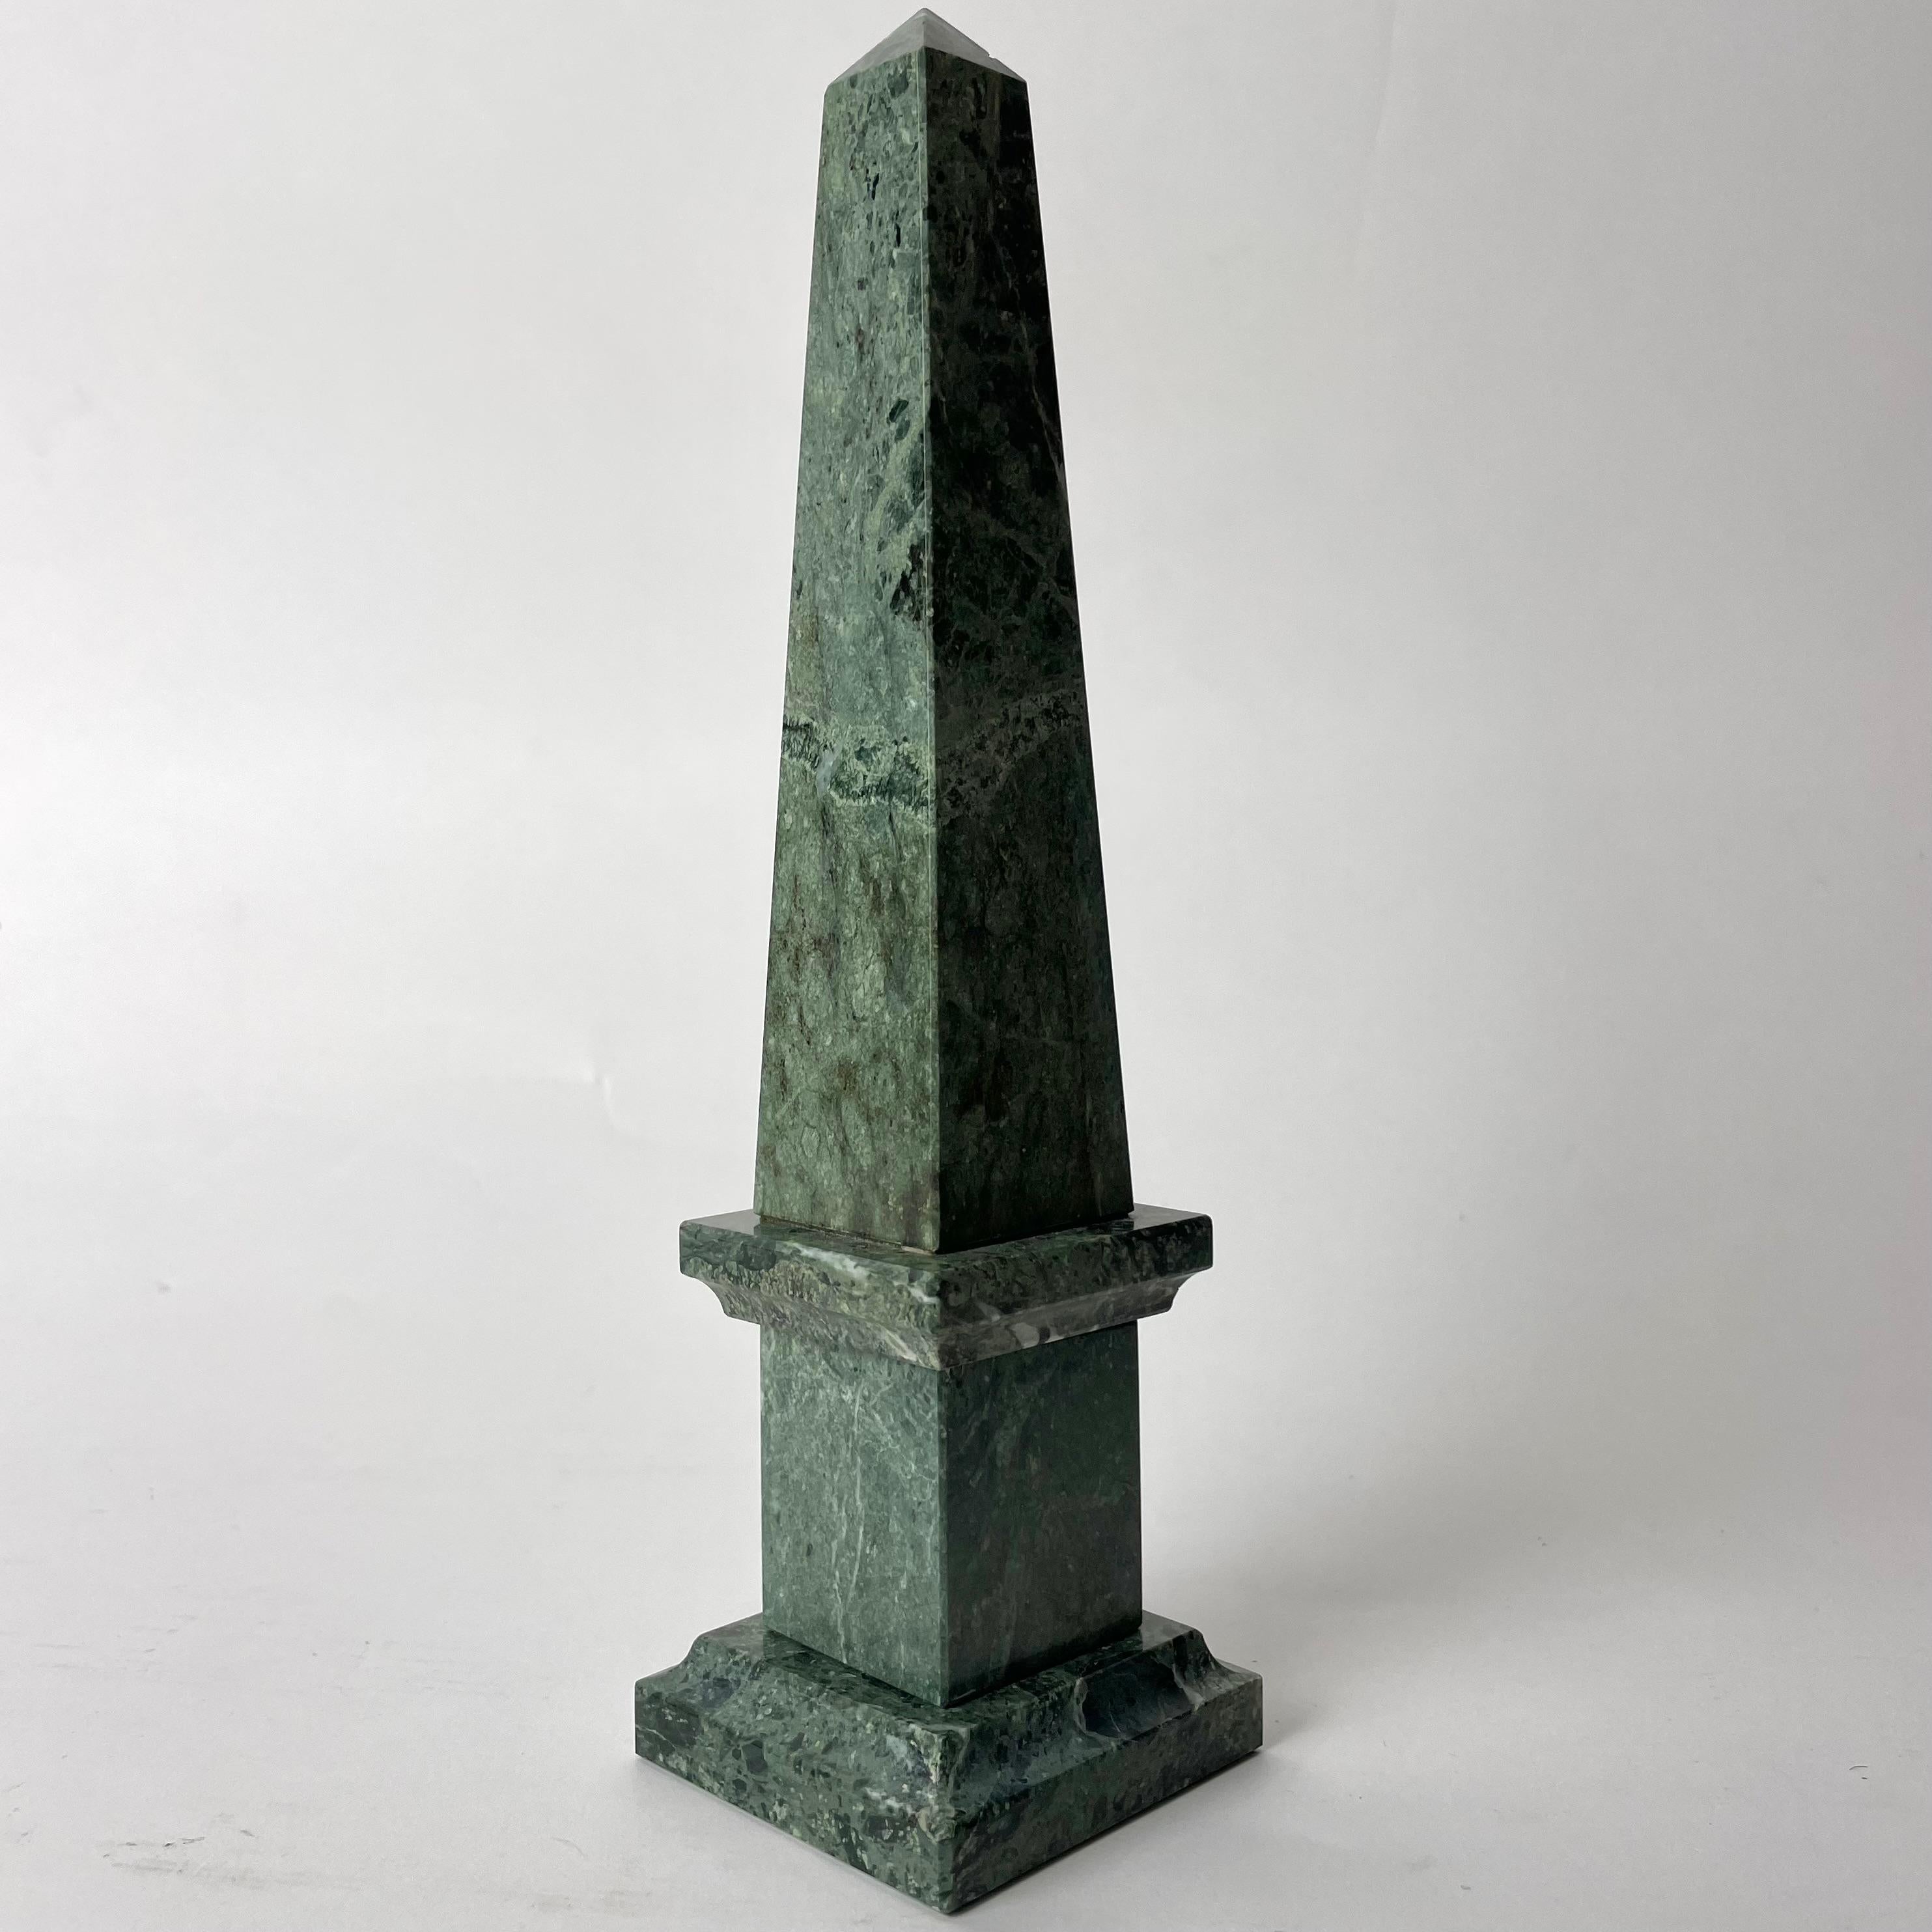 Refinierter Marmor-Obelisk, 20. Jahrhundert

Ein Obelisk aus massivem und schönem grünen Marmor. Exquisite Form, die durch die Exklusivität des MATERIALs noch verstärkt wird.

Alters- und gebrauchsbedingte Abnutzungserscheinungen.